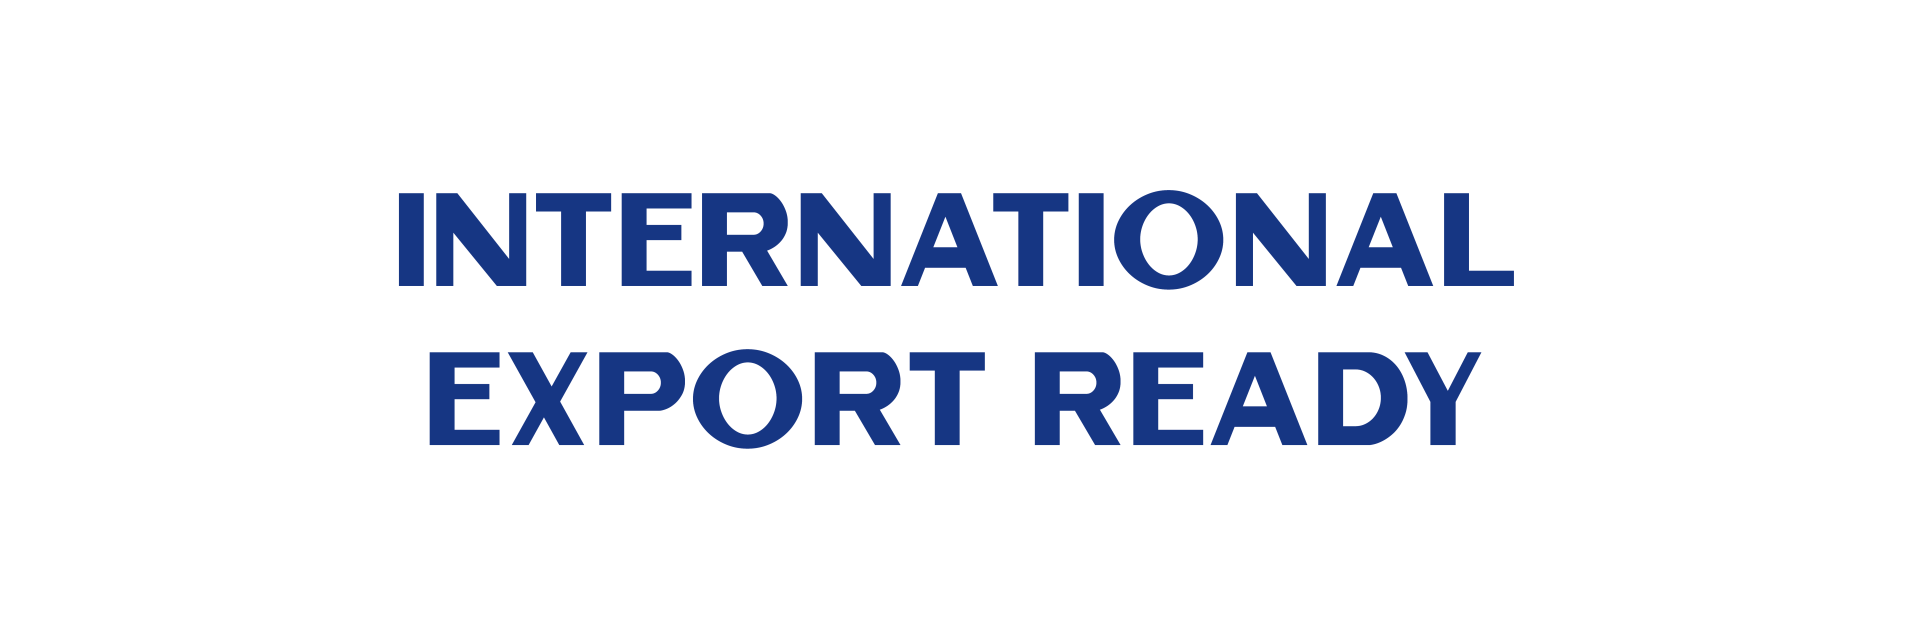 International Export Ready Text